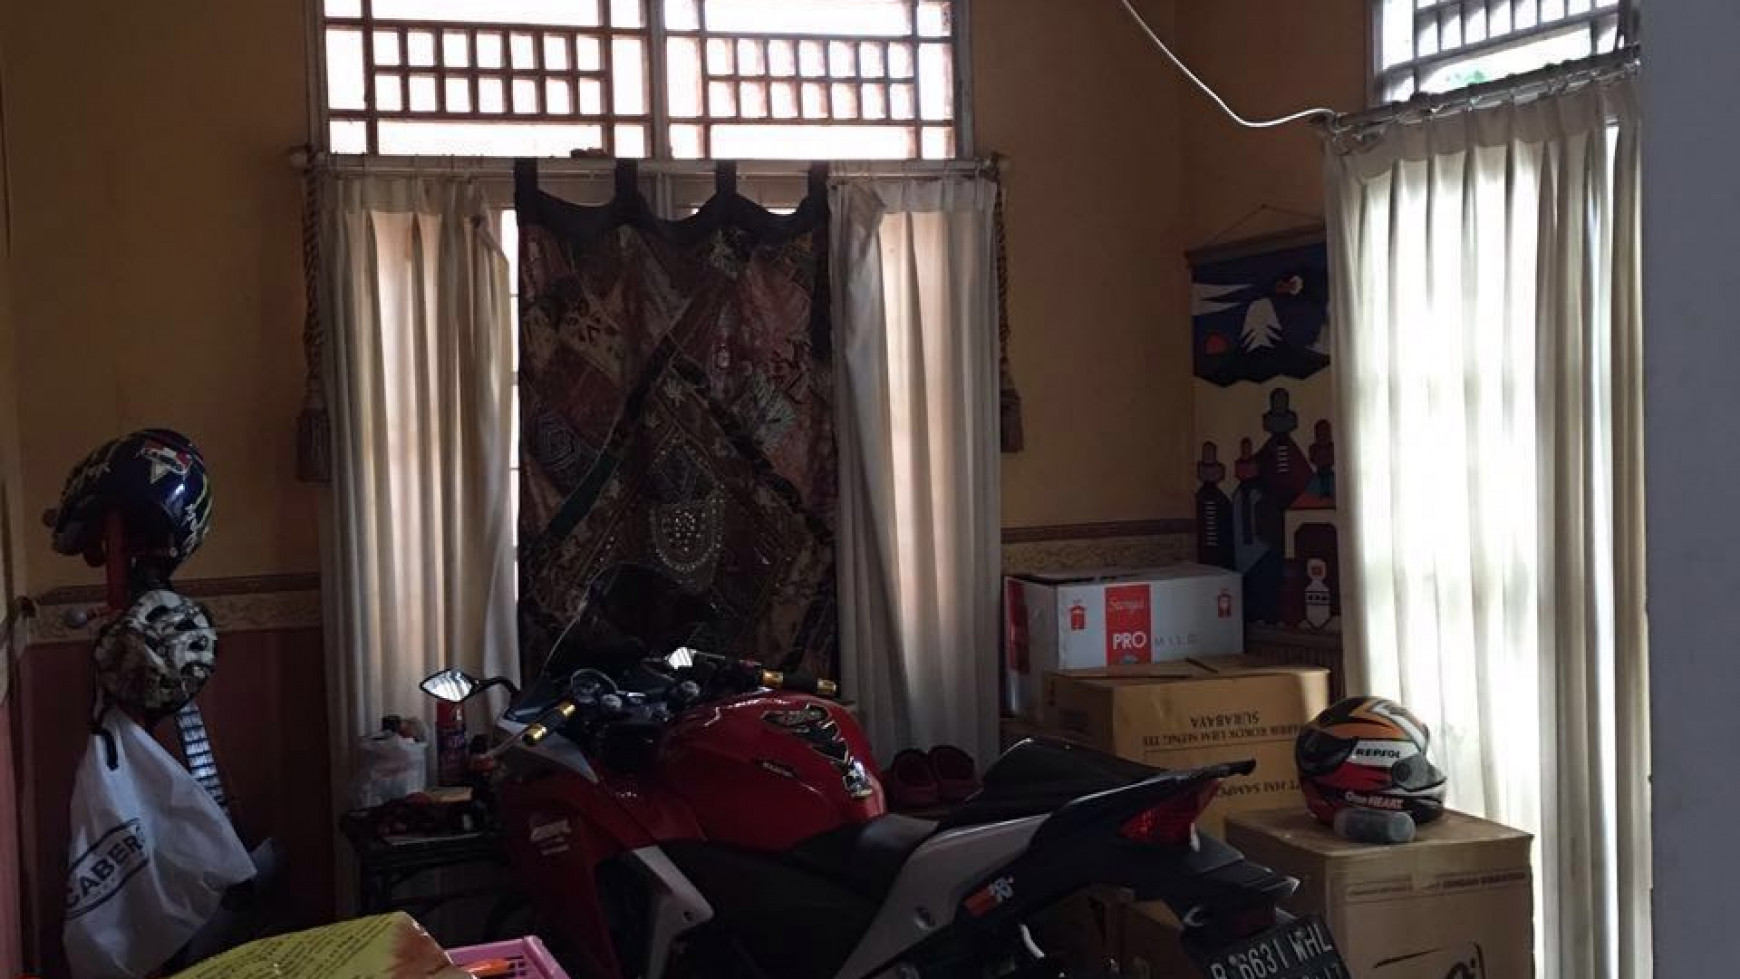 Rumah siap huni di Bintaro Jaya Sektor 9